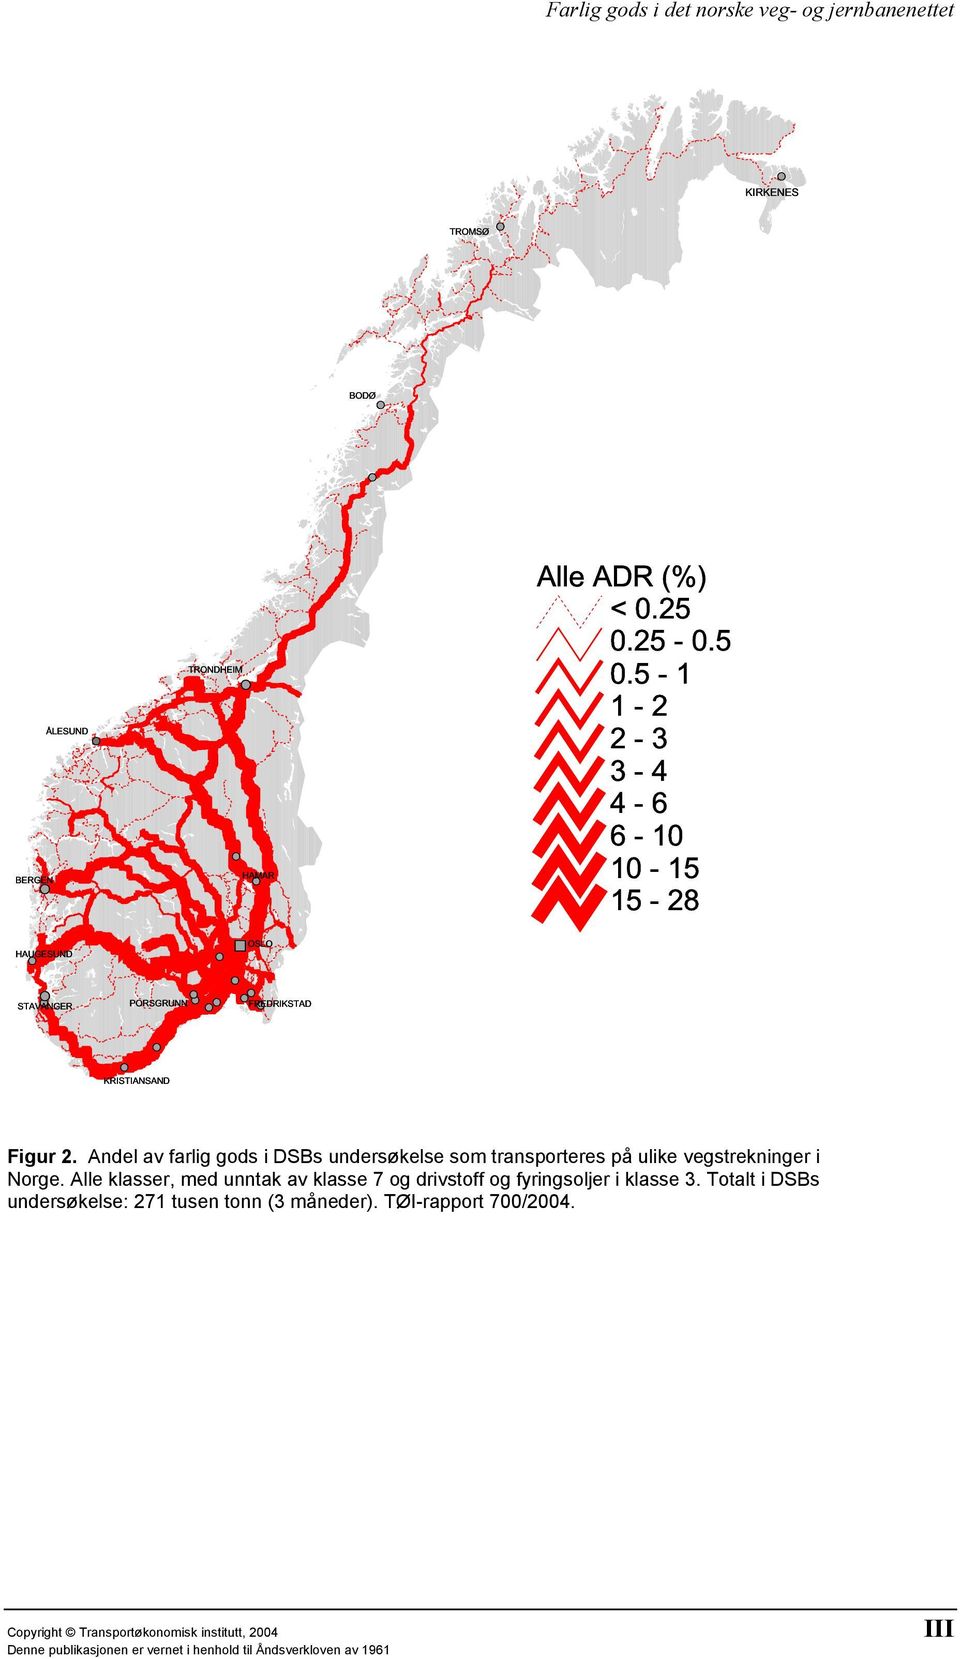 Andel av farlig gods i DSBs undersøkelse som transporteres på ulike vegstrekninger i Norge.